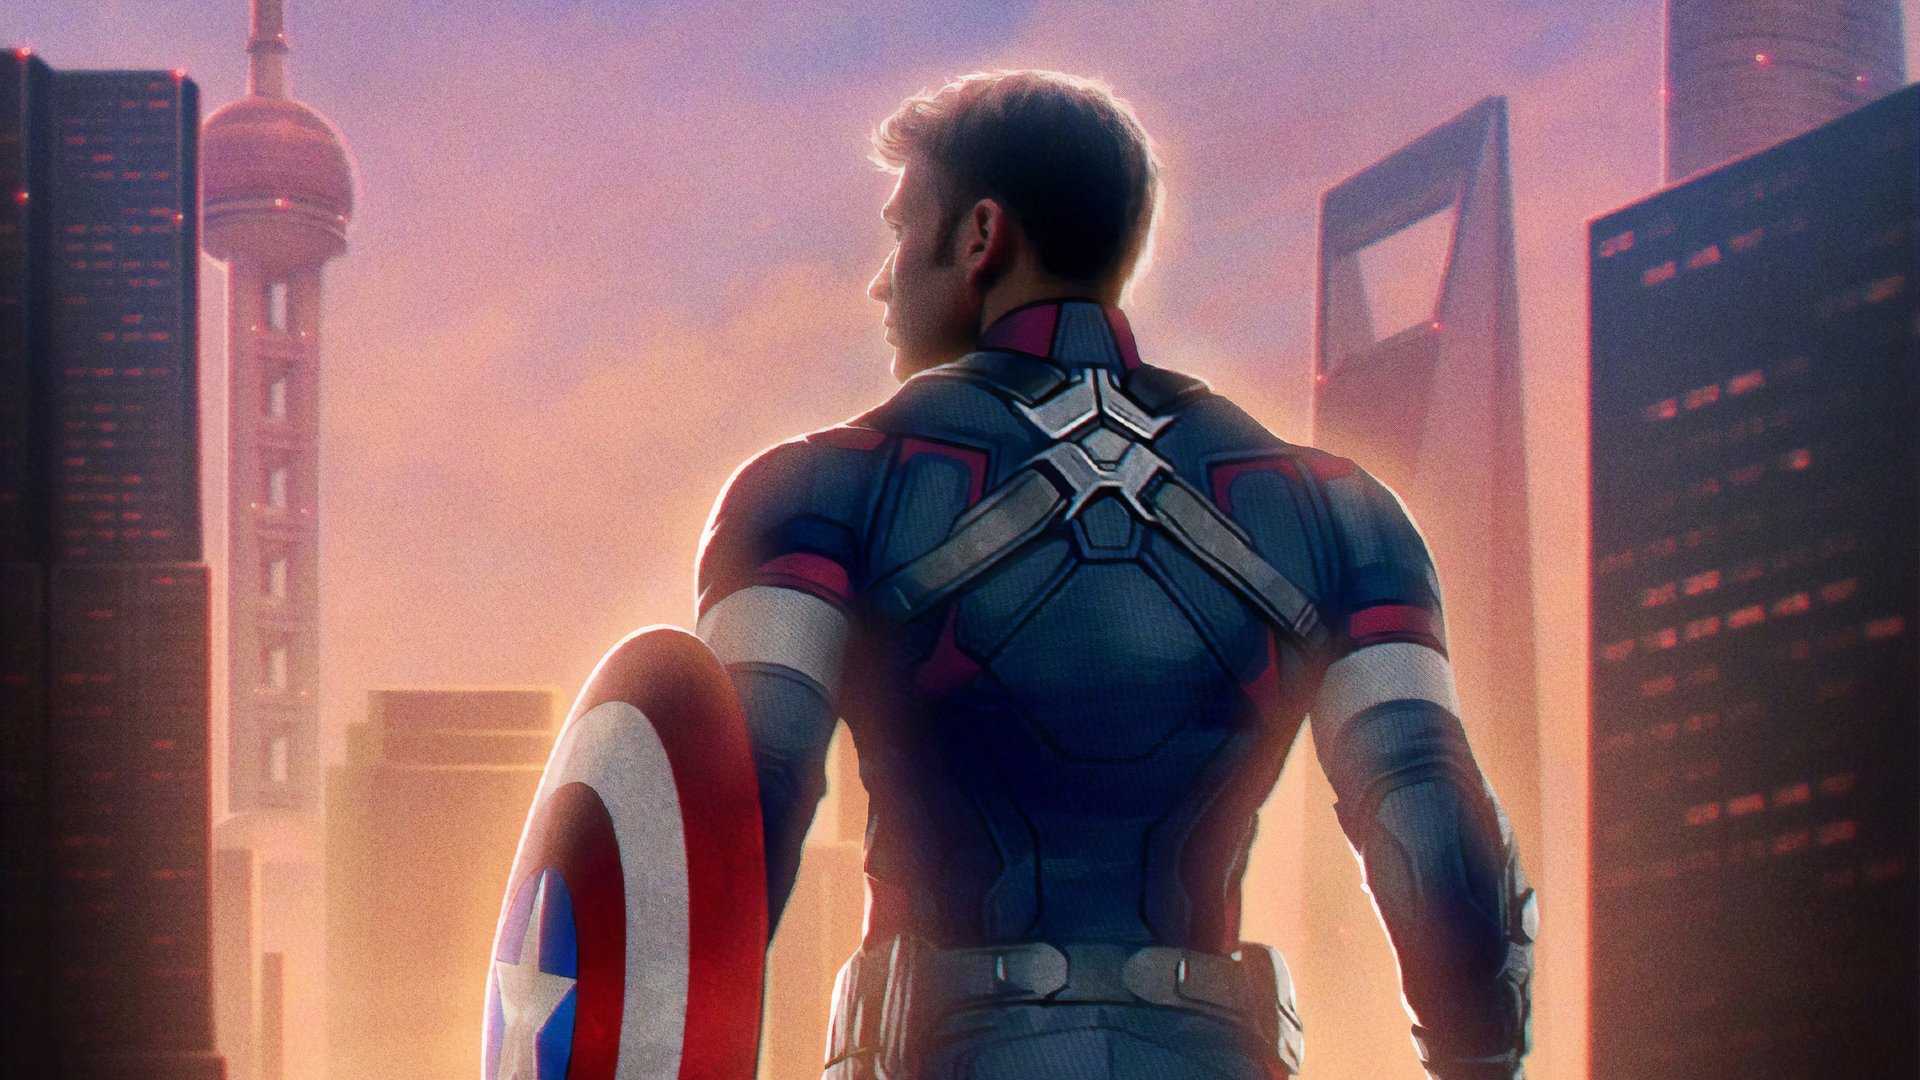 Captain America Avengers Endgame Chinese Poster HD Wallpaper